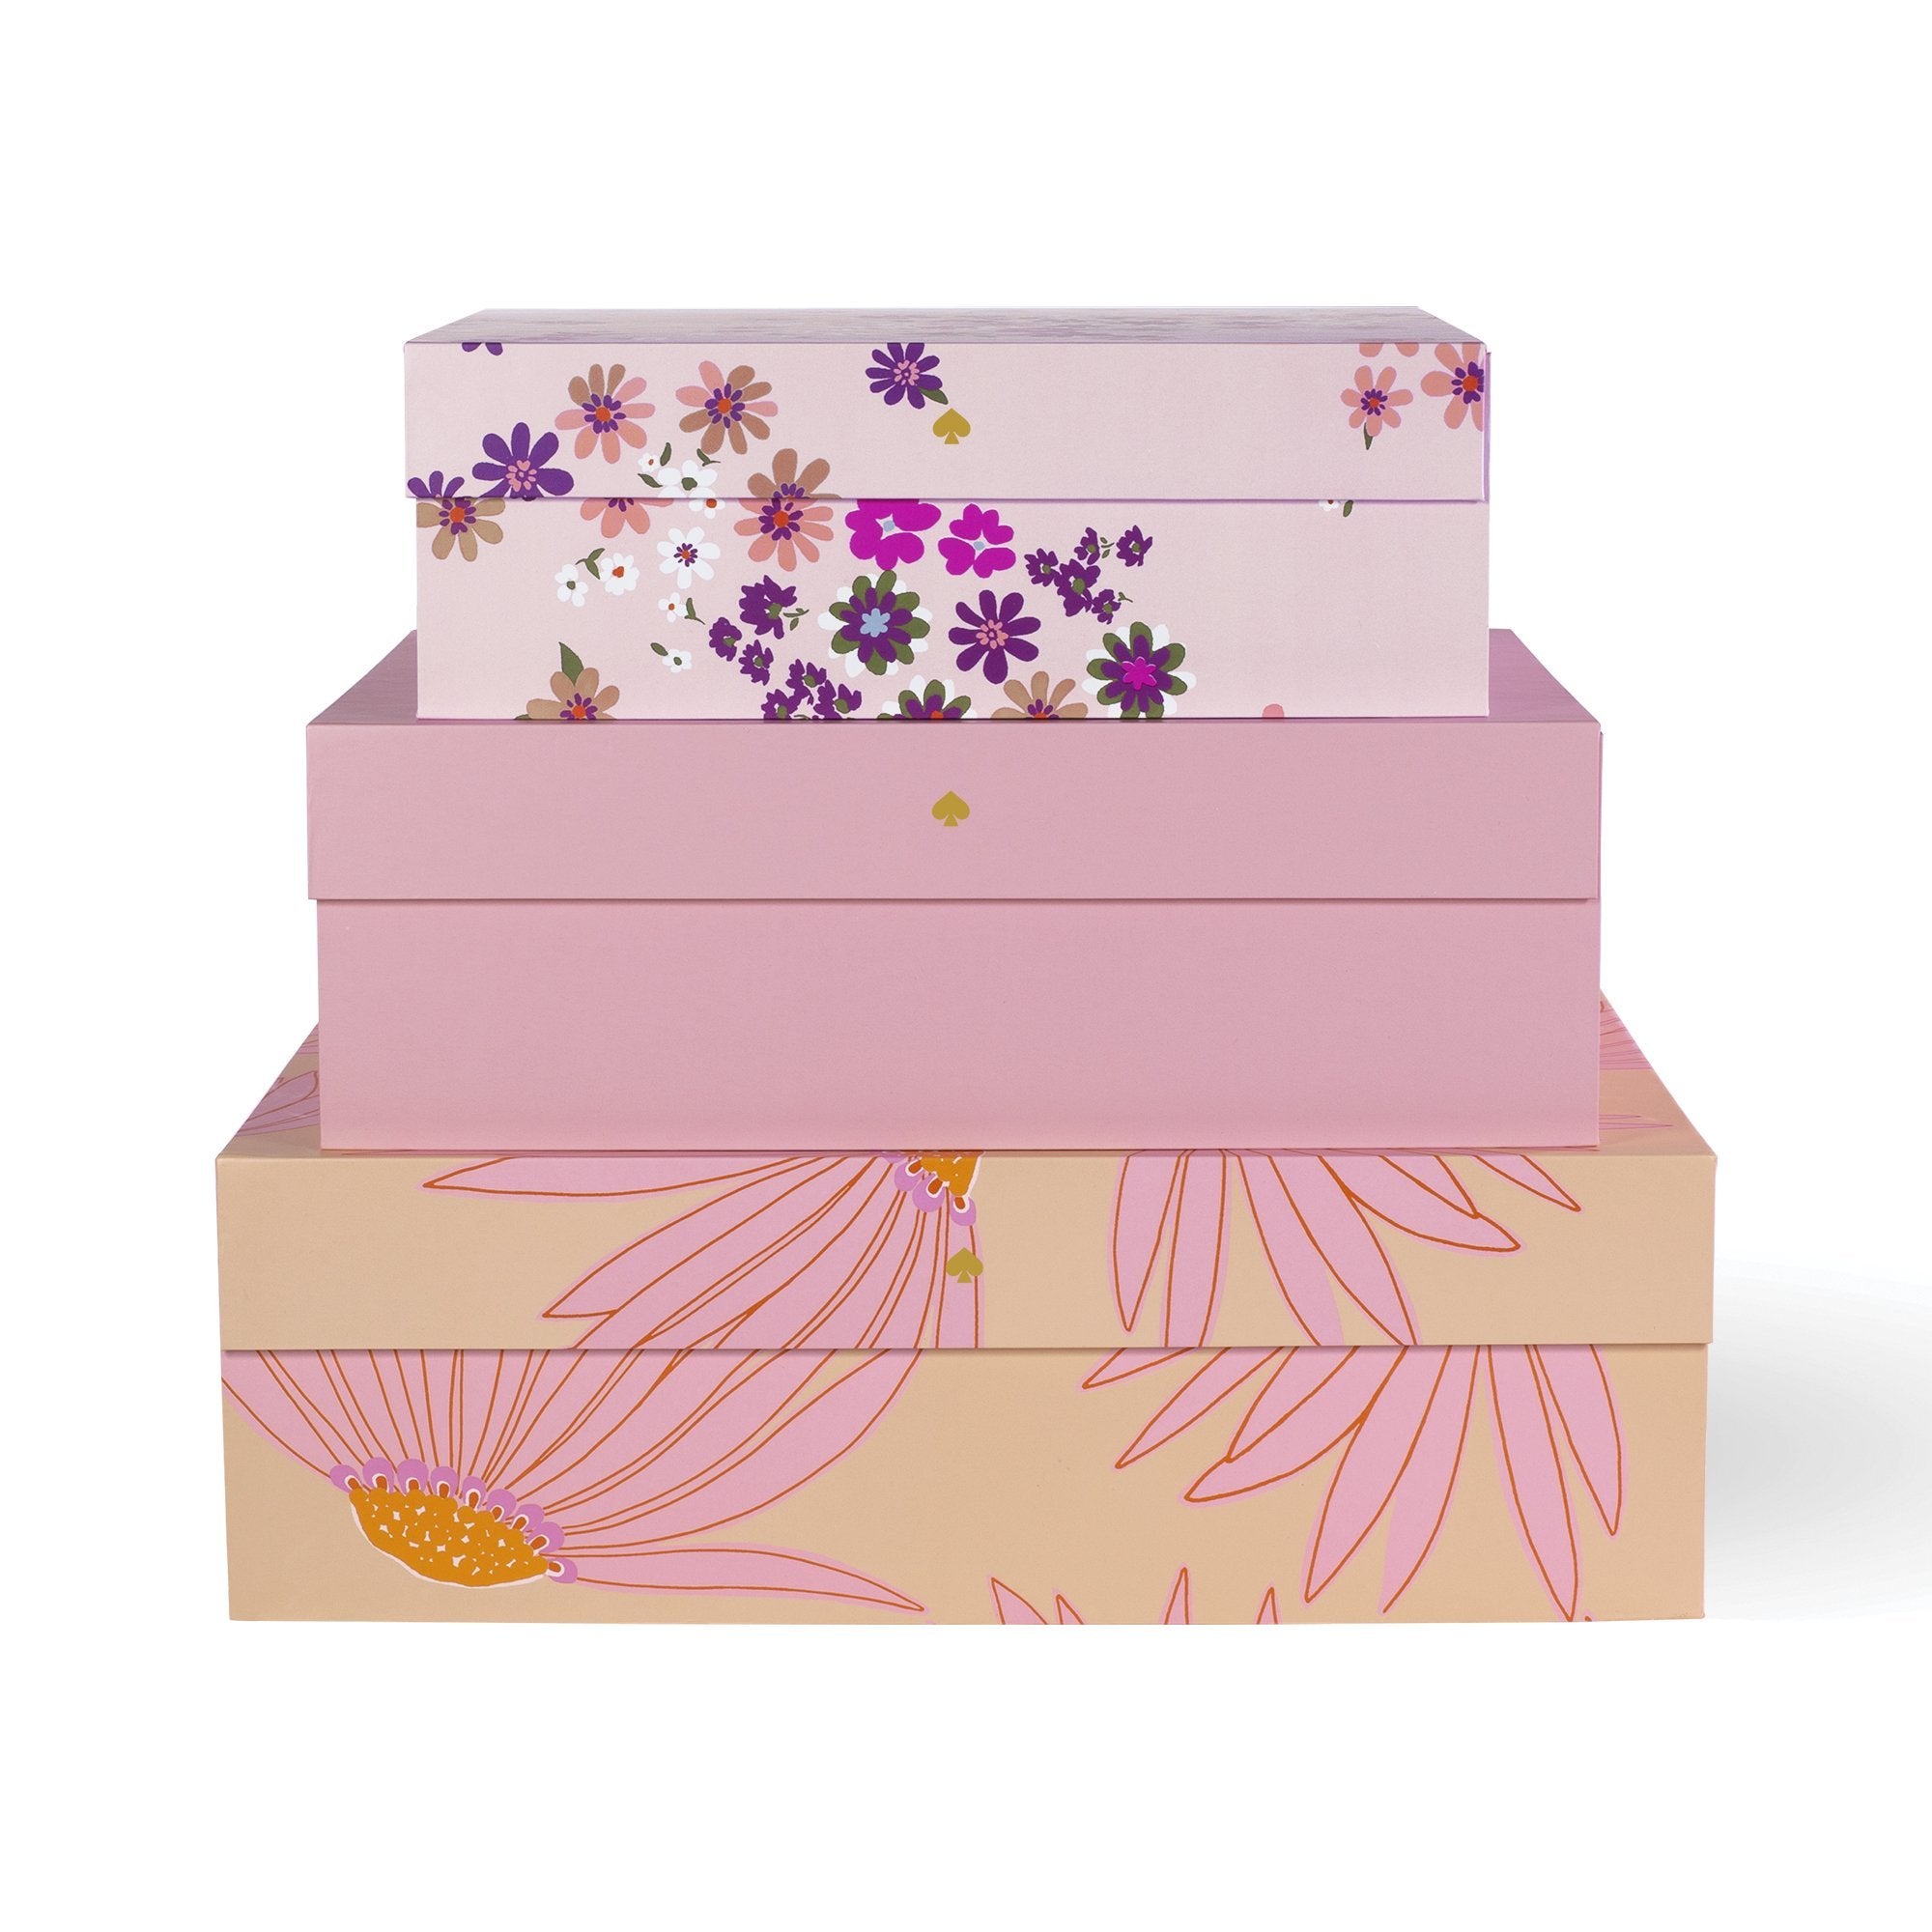 Kate Spade New York - Falling Flower Nesting Boxes